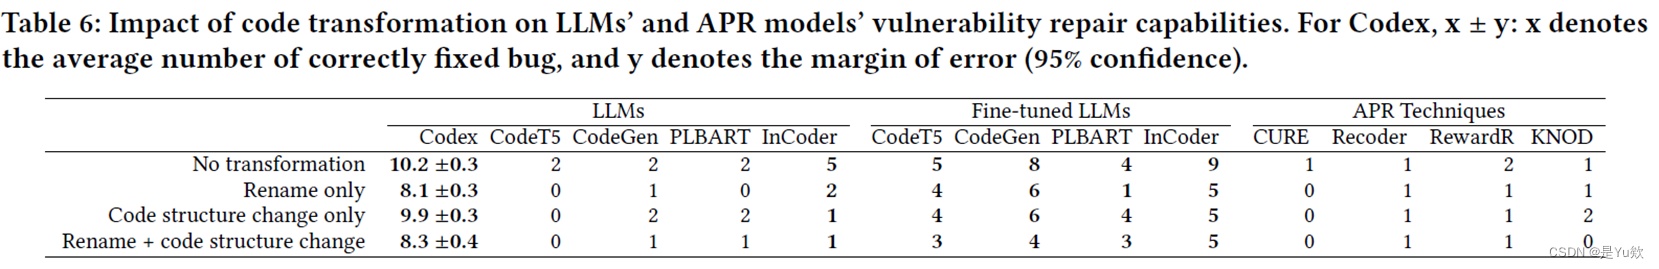 【网安AIGC专题10.19】论文6：Java漏洞自动修复+数据集 VJBench+大语言模型、APR技术+代码转换方法+LLM和DL-APR模型的挑战与机会